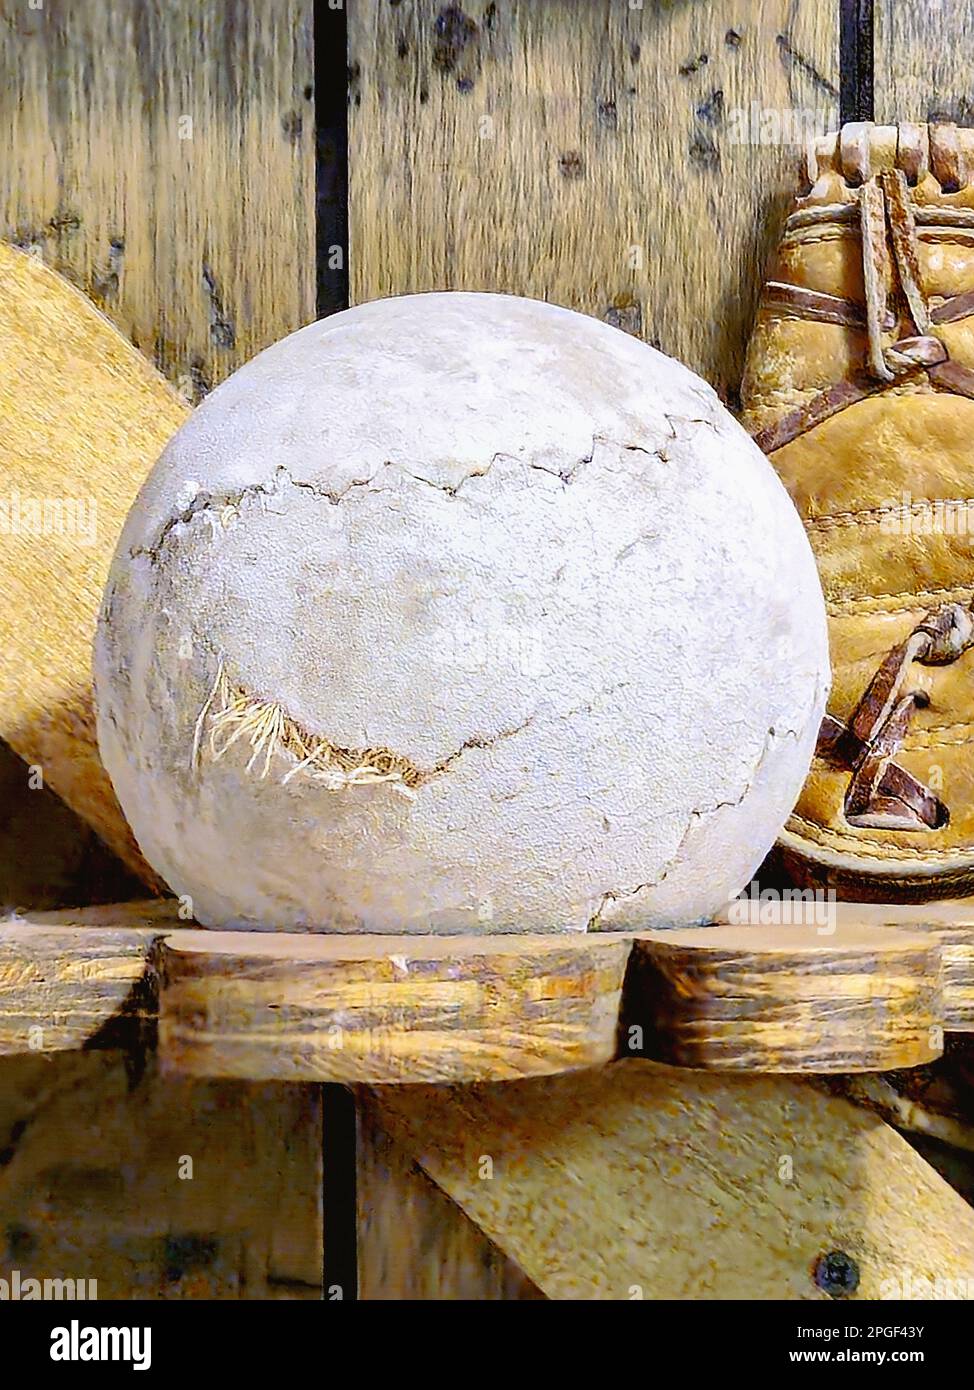 Viejo softbol exhibido en un estante de madera rústica Foto de stock